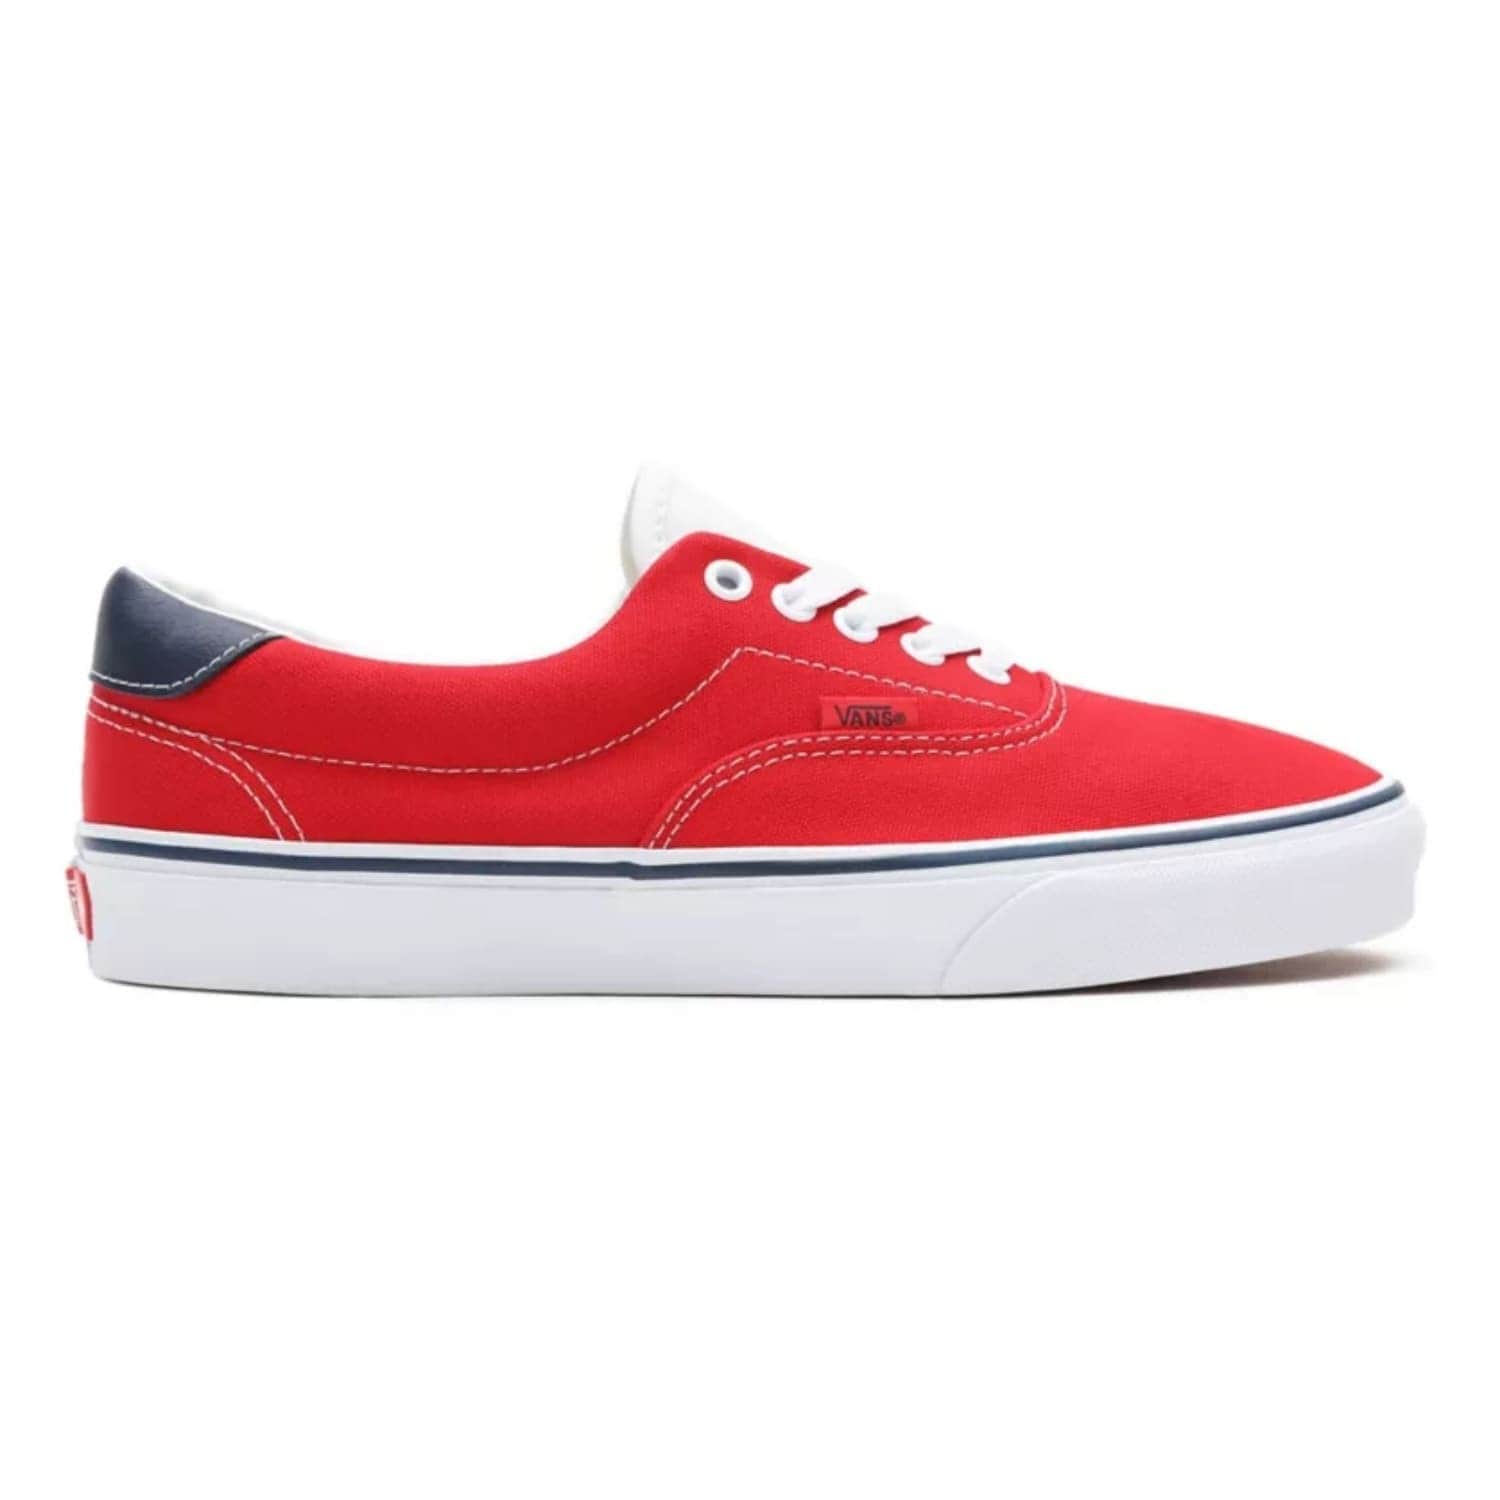 Vans C&L Era 59 Shoes - Red/True White - Mens Skate Shoes by Vans